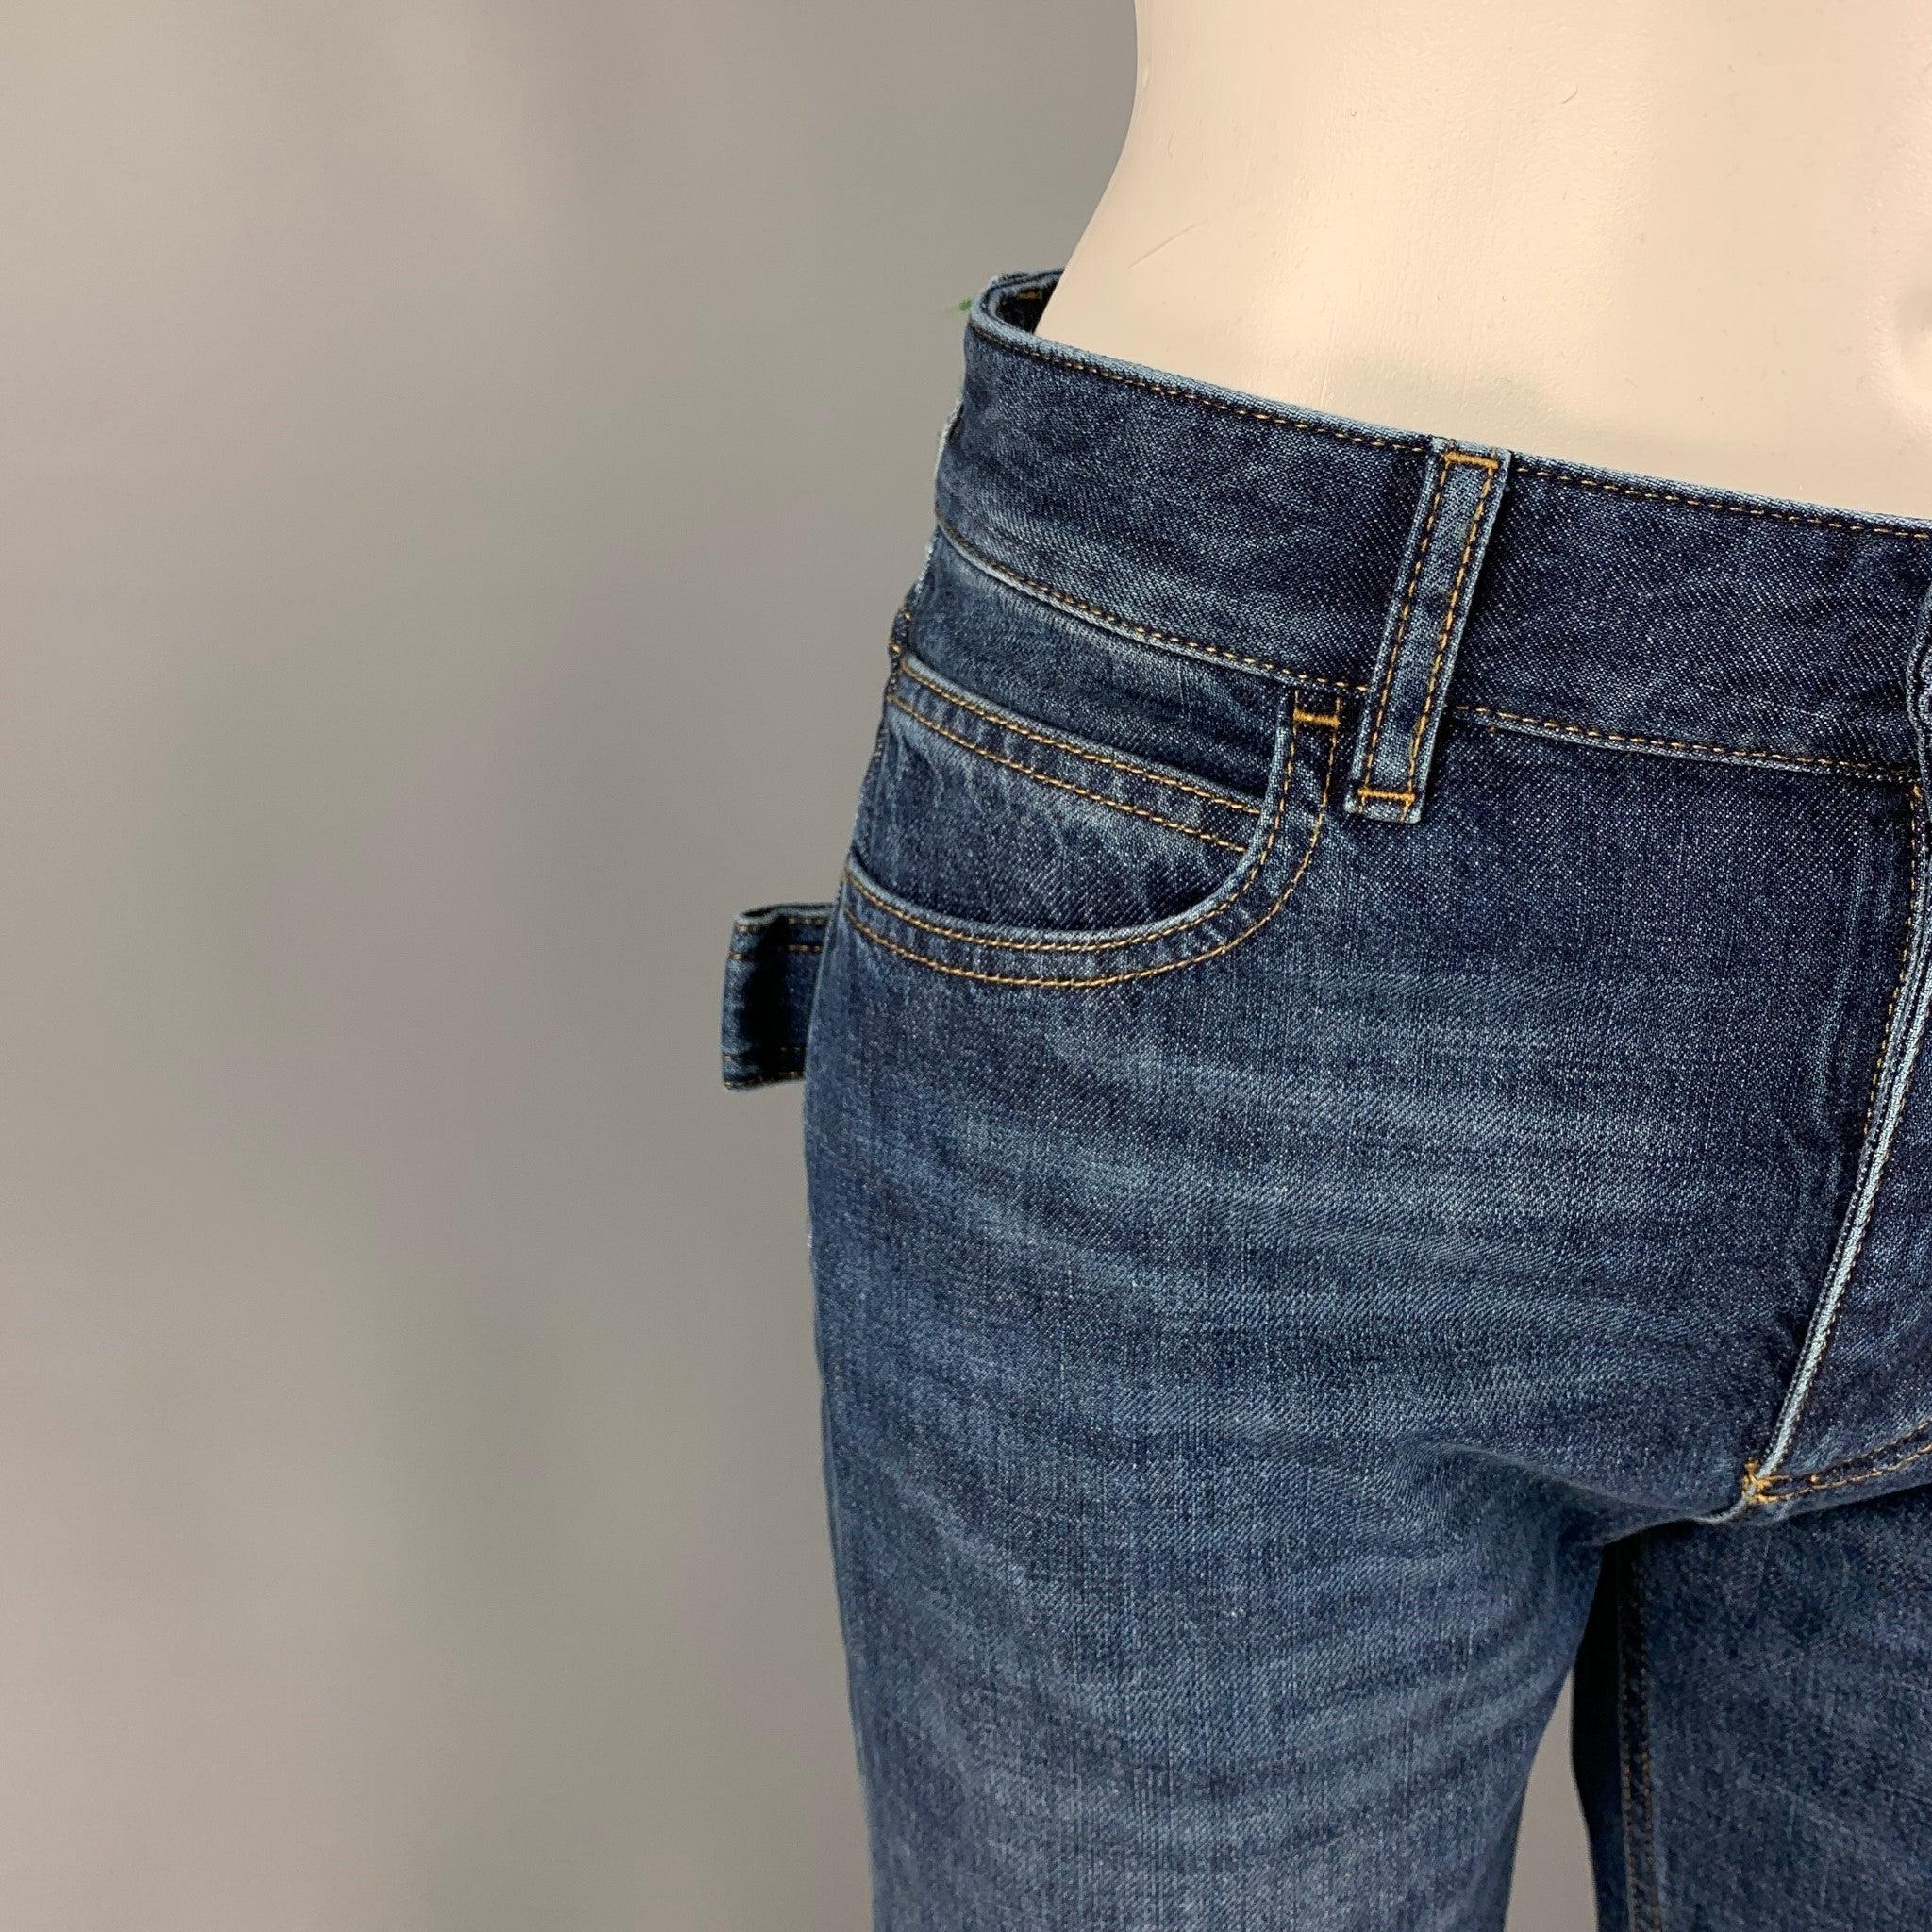 BOTTEGA VENETA Jeans aus blau gewaschener Baumwolle mit mittlerer Taille, ausgestelltem Bein, Kontrastnähten, grüner Zierleiste und Knopfverschluss. Hergestellt in Italien.
Ausgezeichnet
Gebrauchtes Zustand. 

Markiert:   36 

Abmessungen: 
 